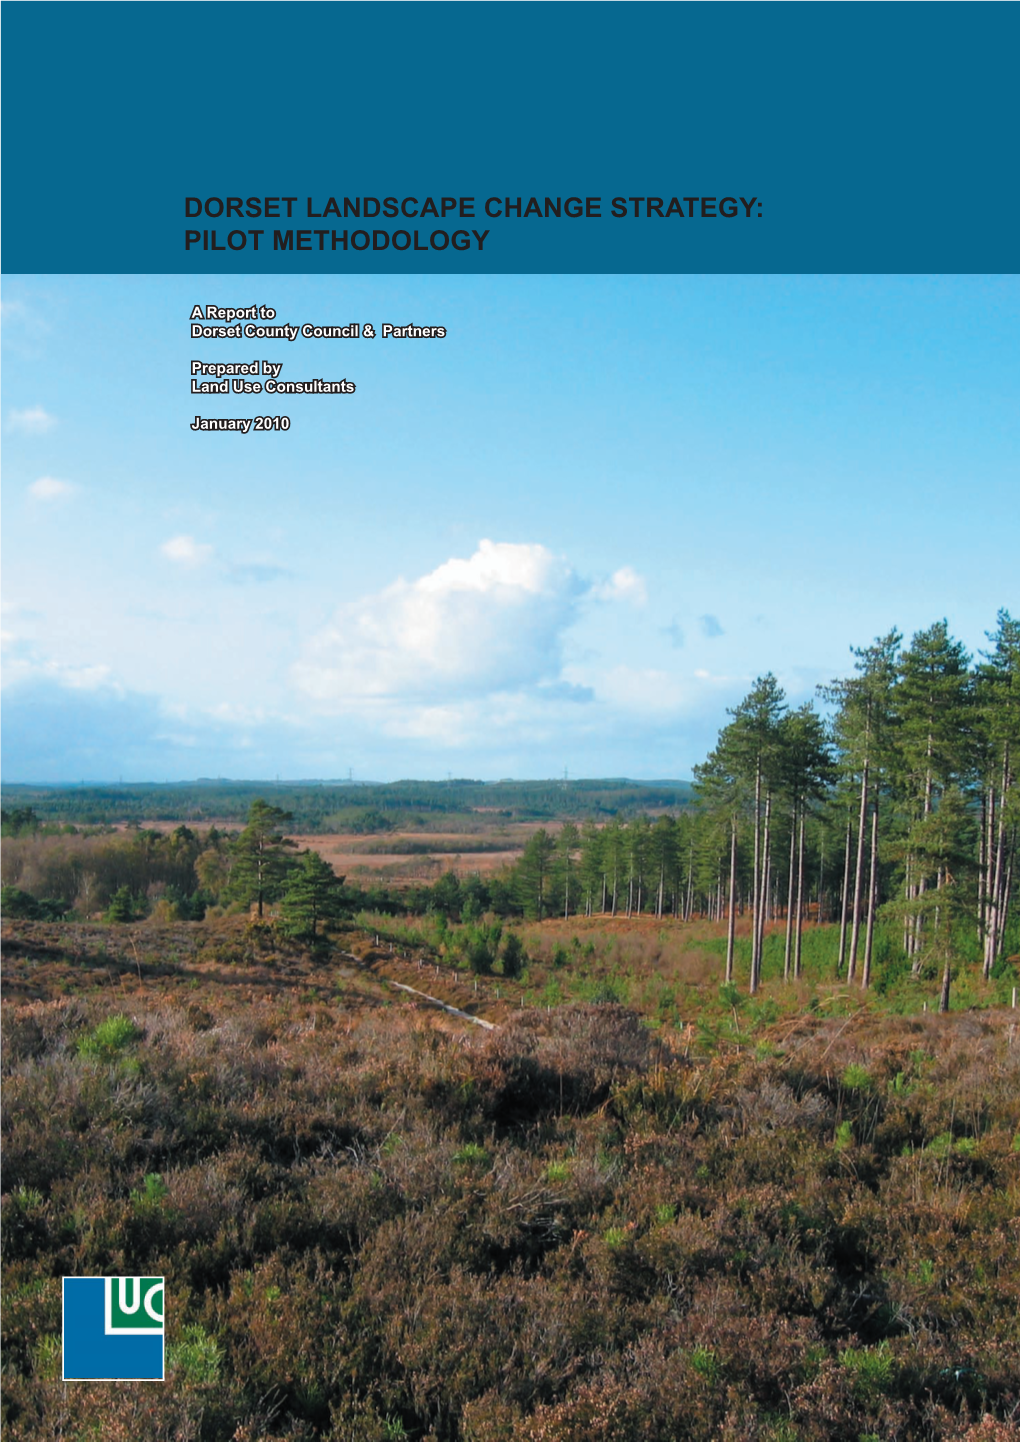 Dorset Landscape Change Strategy Report Jan 2010 Includes Pilot